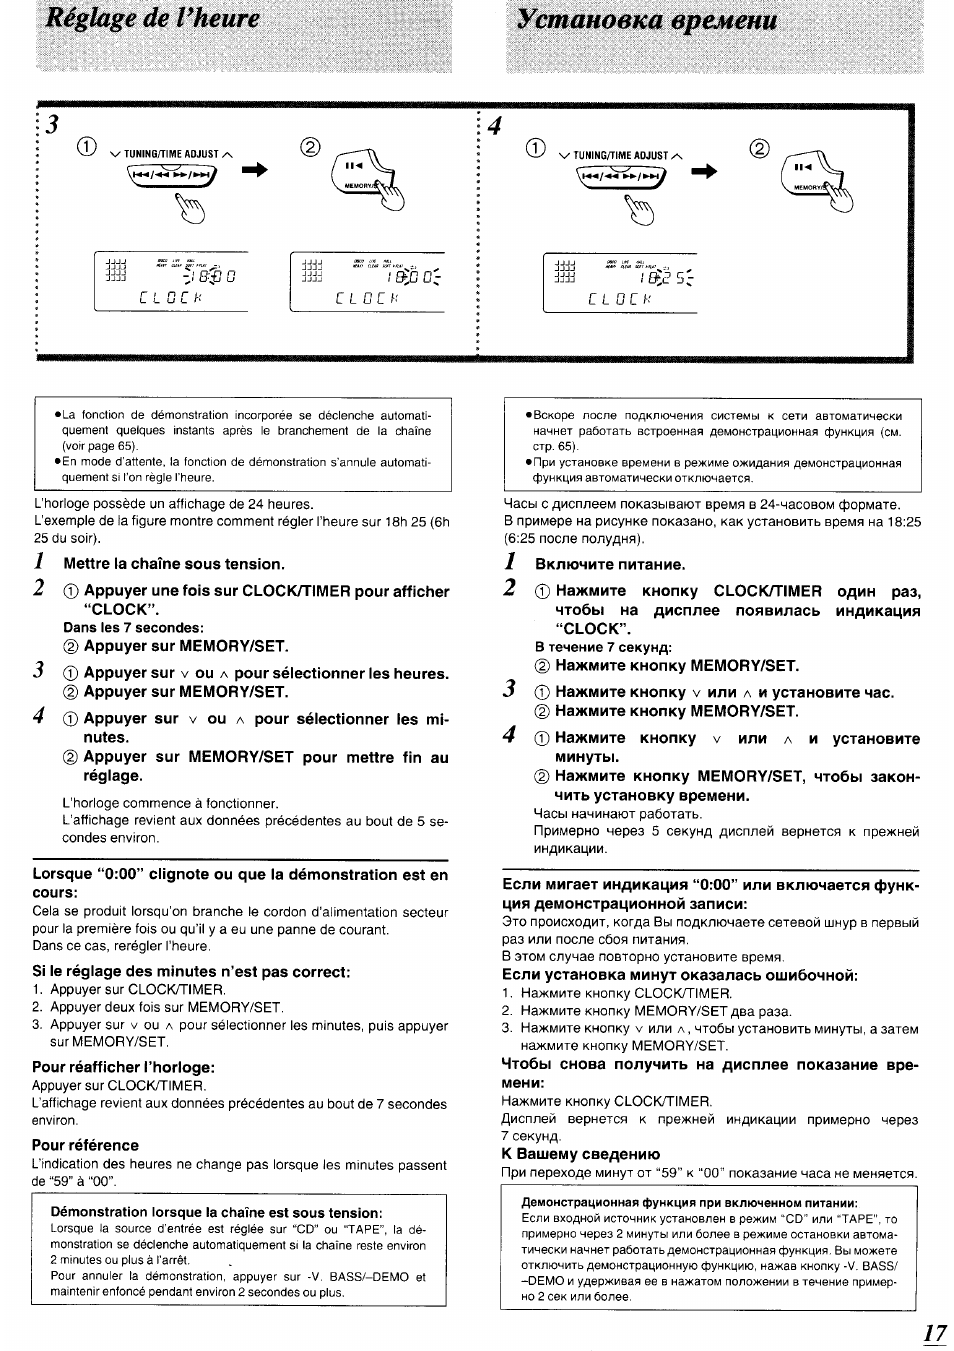 Установка времени, Réglage de vheure установка времени | Инструкция по эксплуатации Panasonic SC-CH64M | Страница 16 / 100